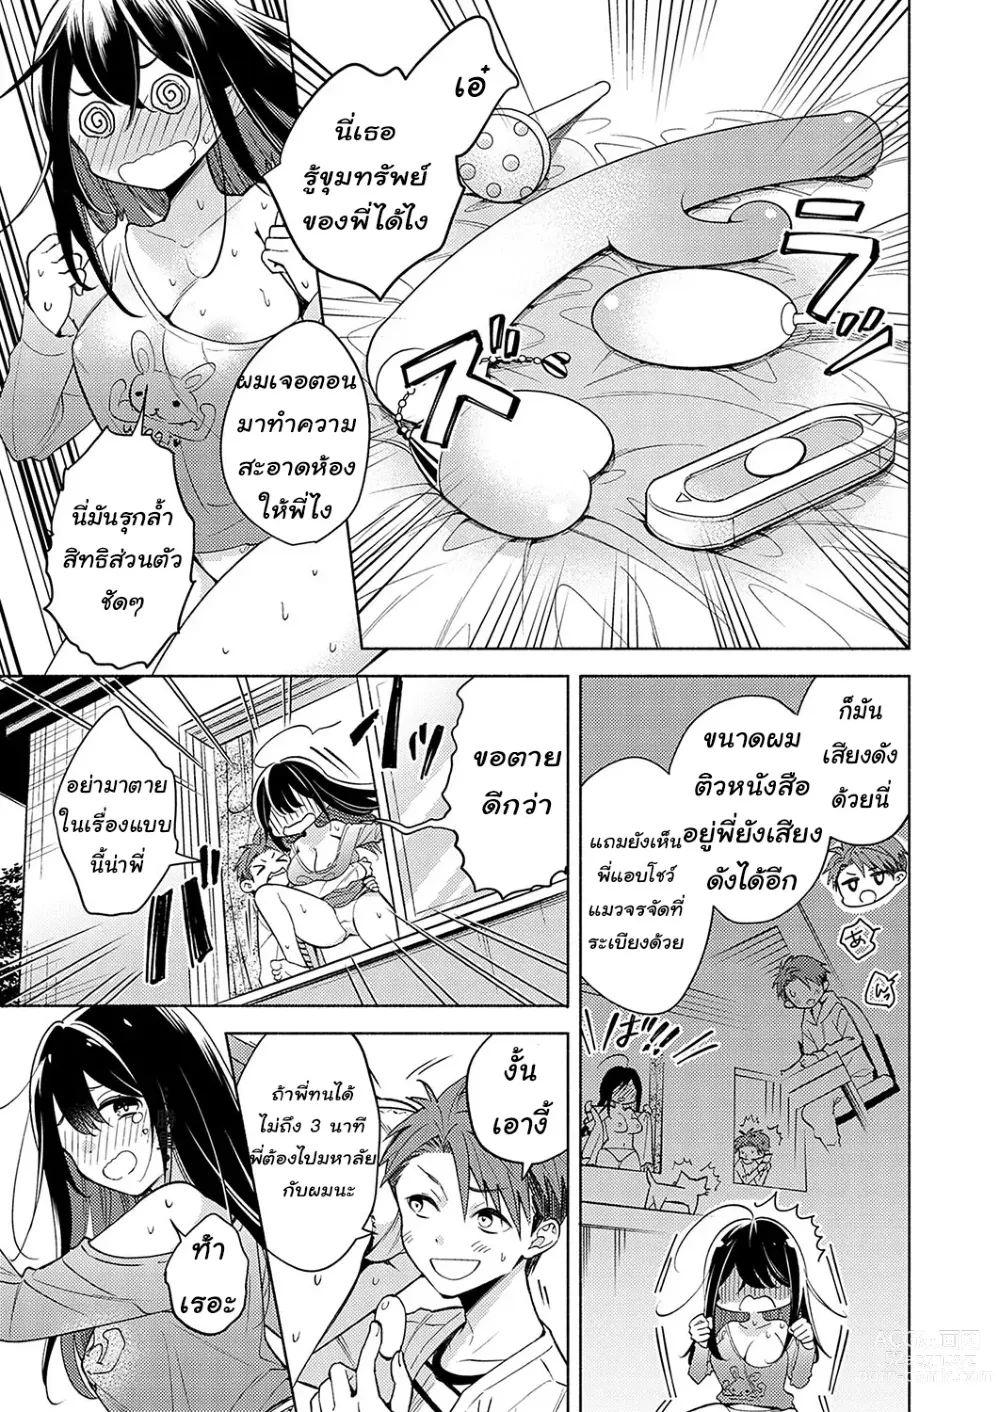 Page 5 of manga Neechan ga doukyusei ni naru made 30-nichi - onani chudoku ane no hiki komori dasshutsu keikaku